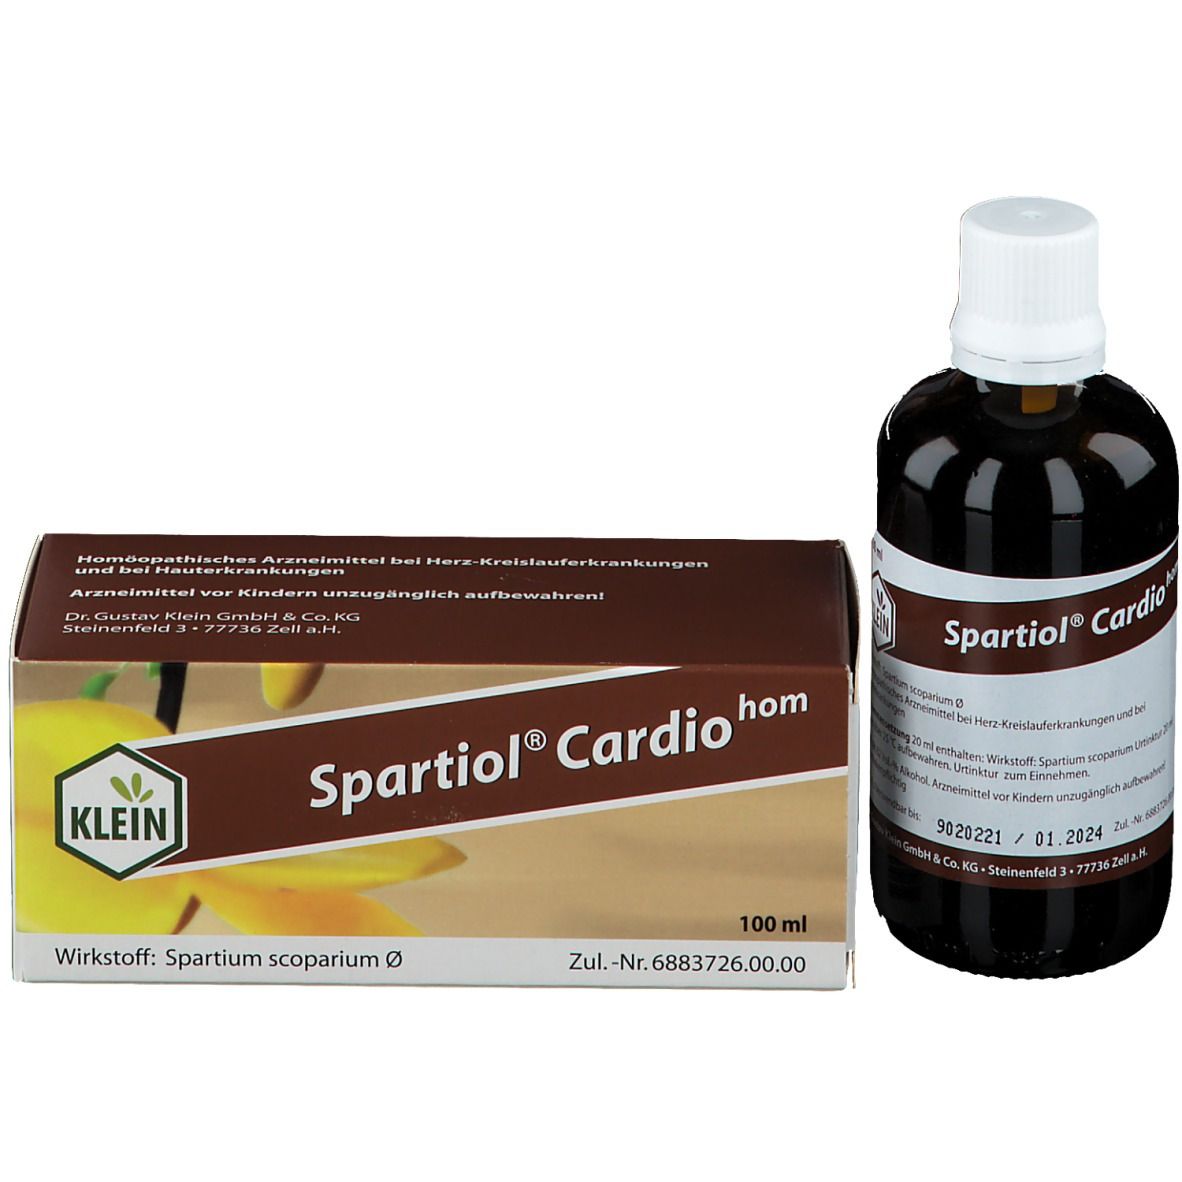 Spartiol® Cardiohom